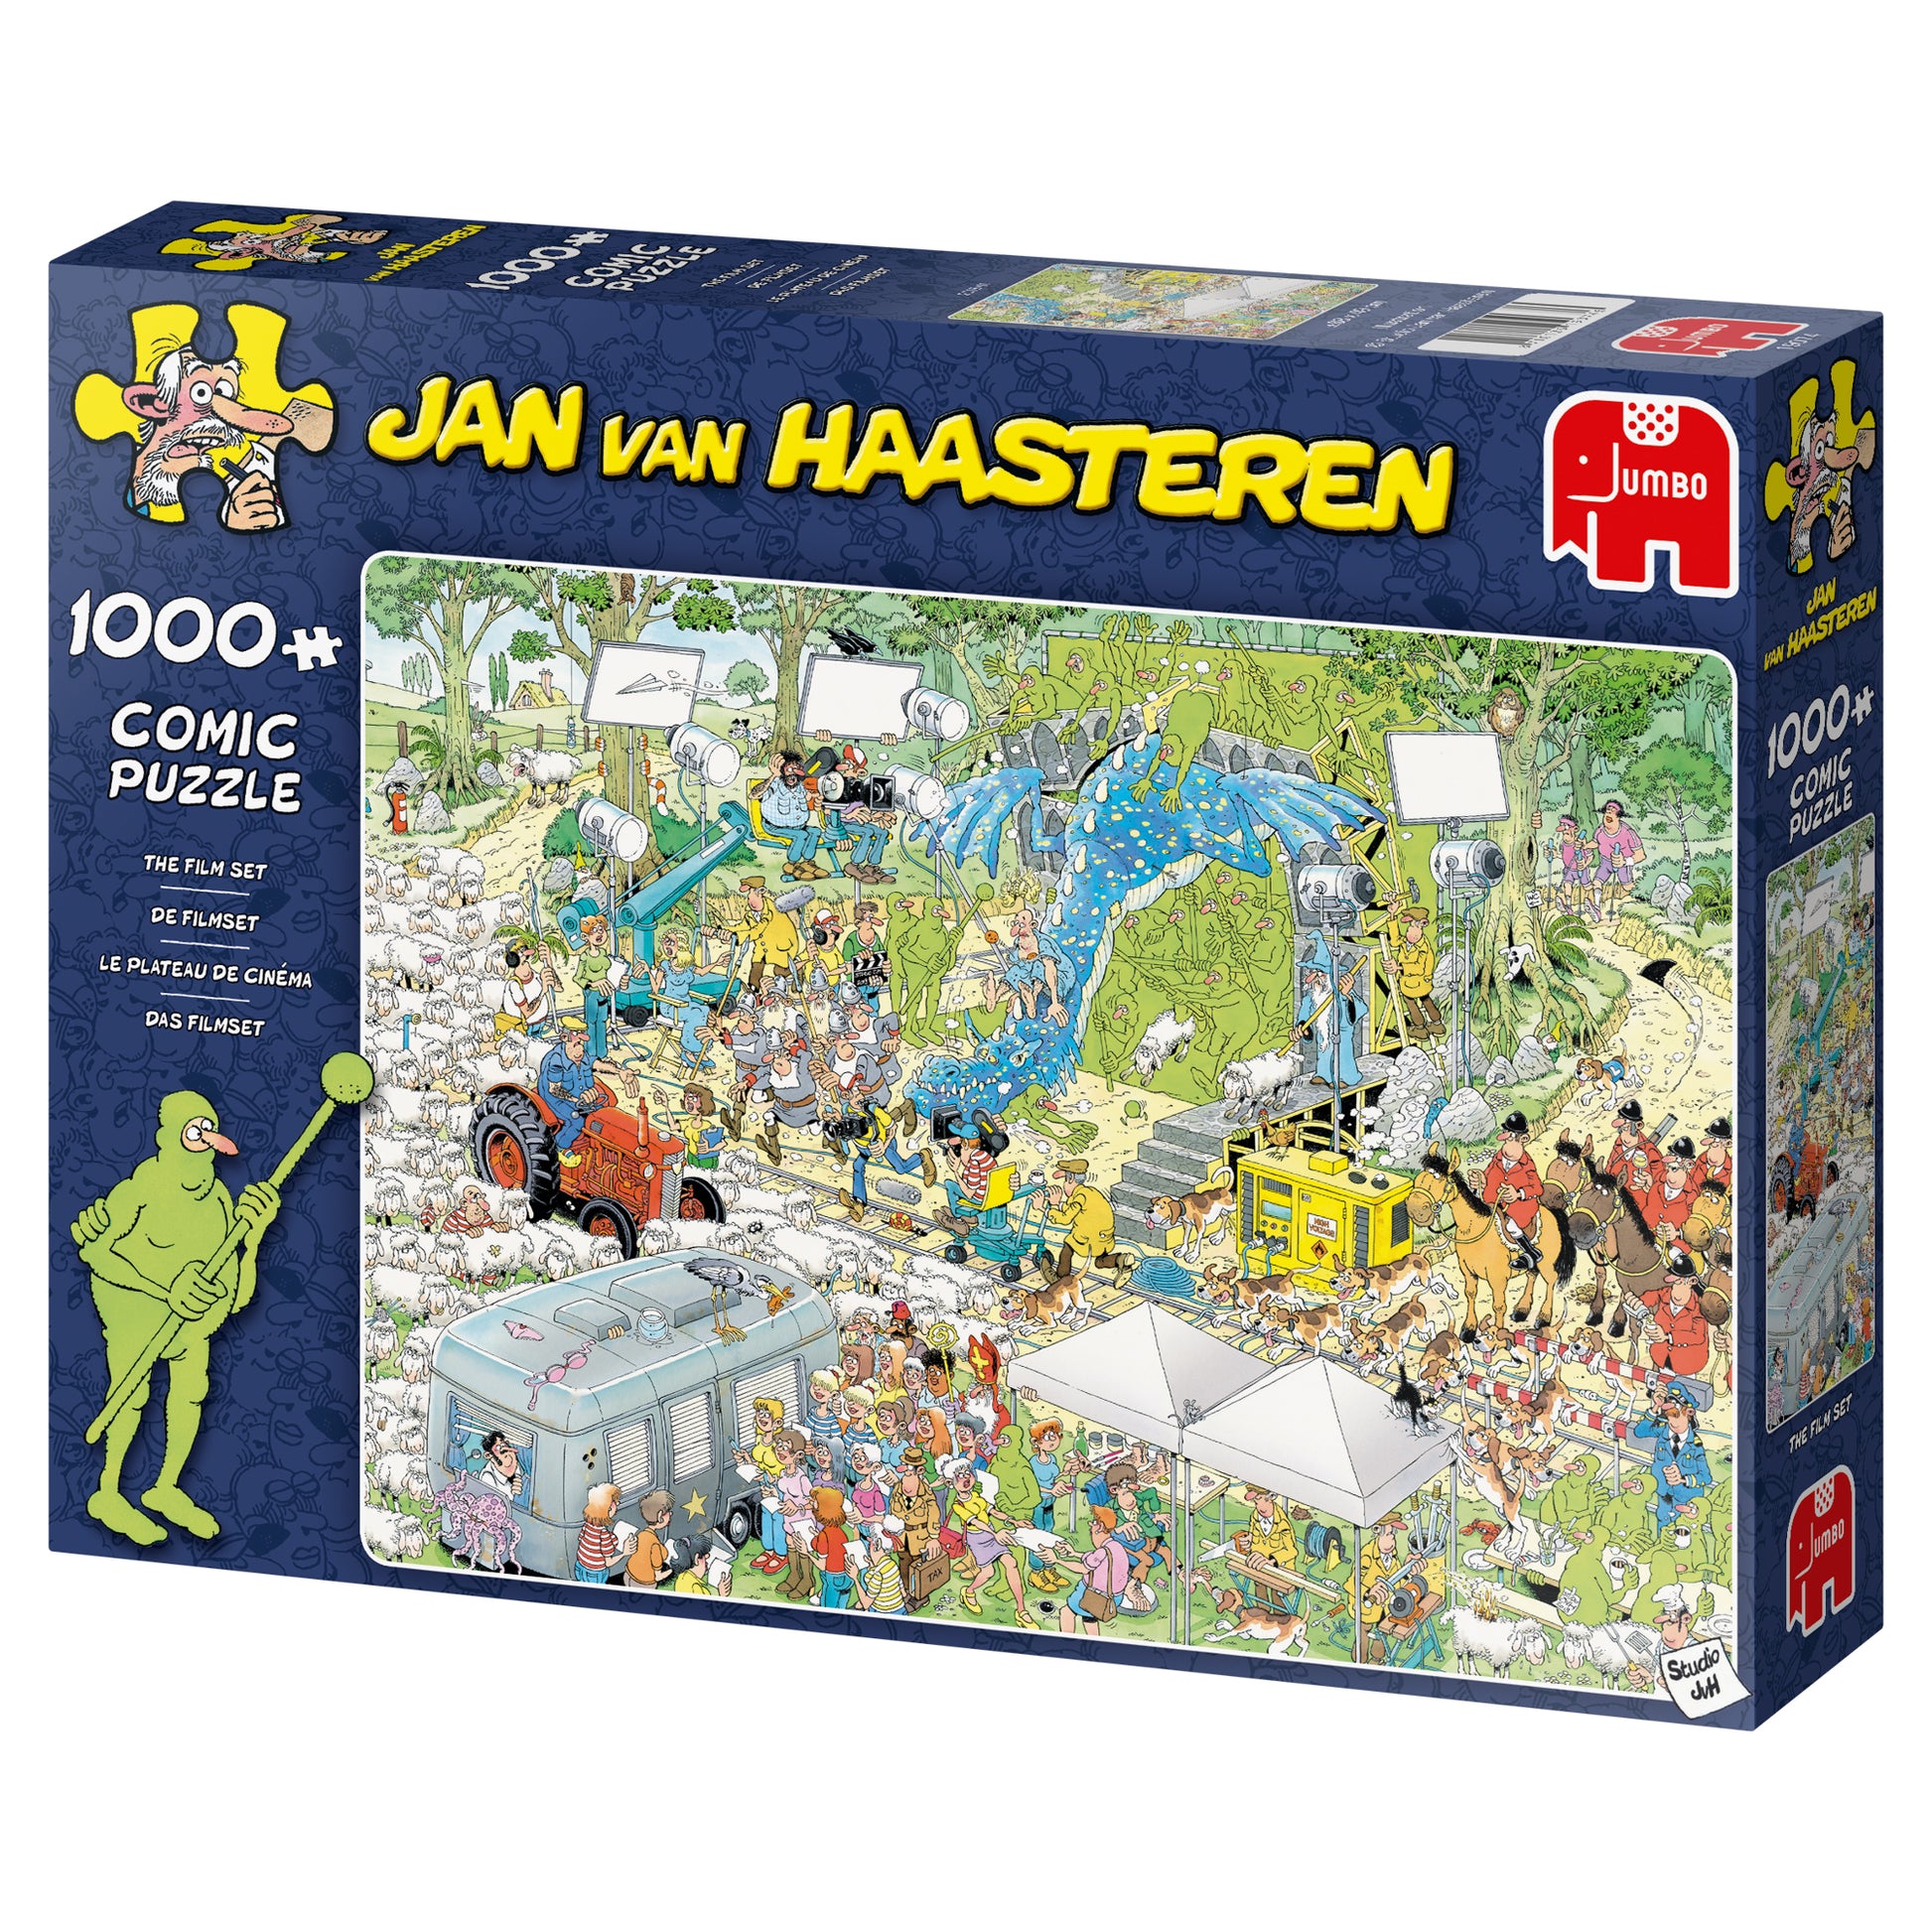 Jan van Haasteren - The Film Set (1000 pieces) - product image - Jumboplay.com